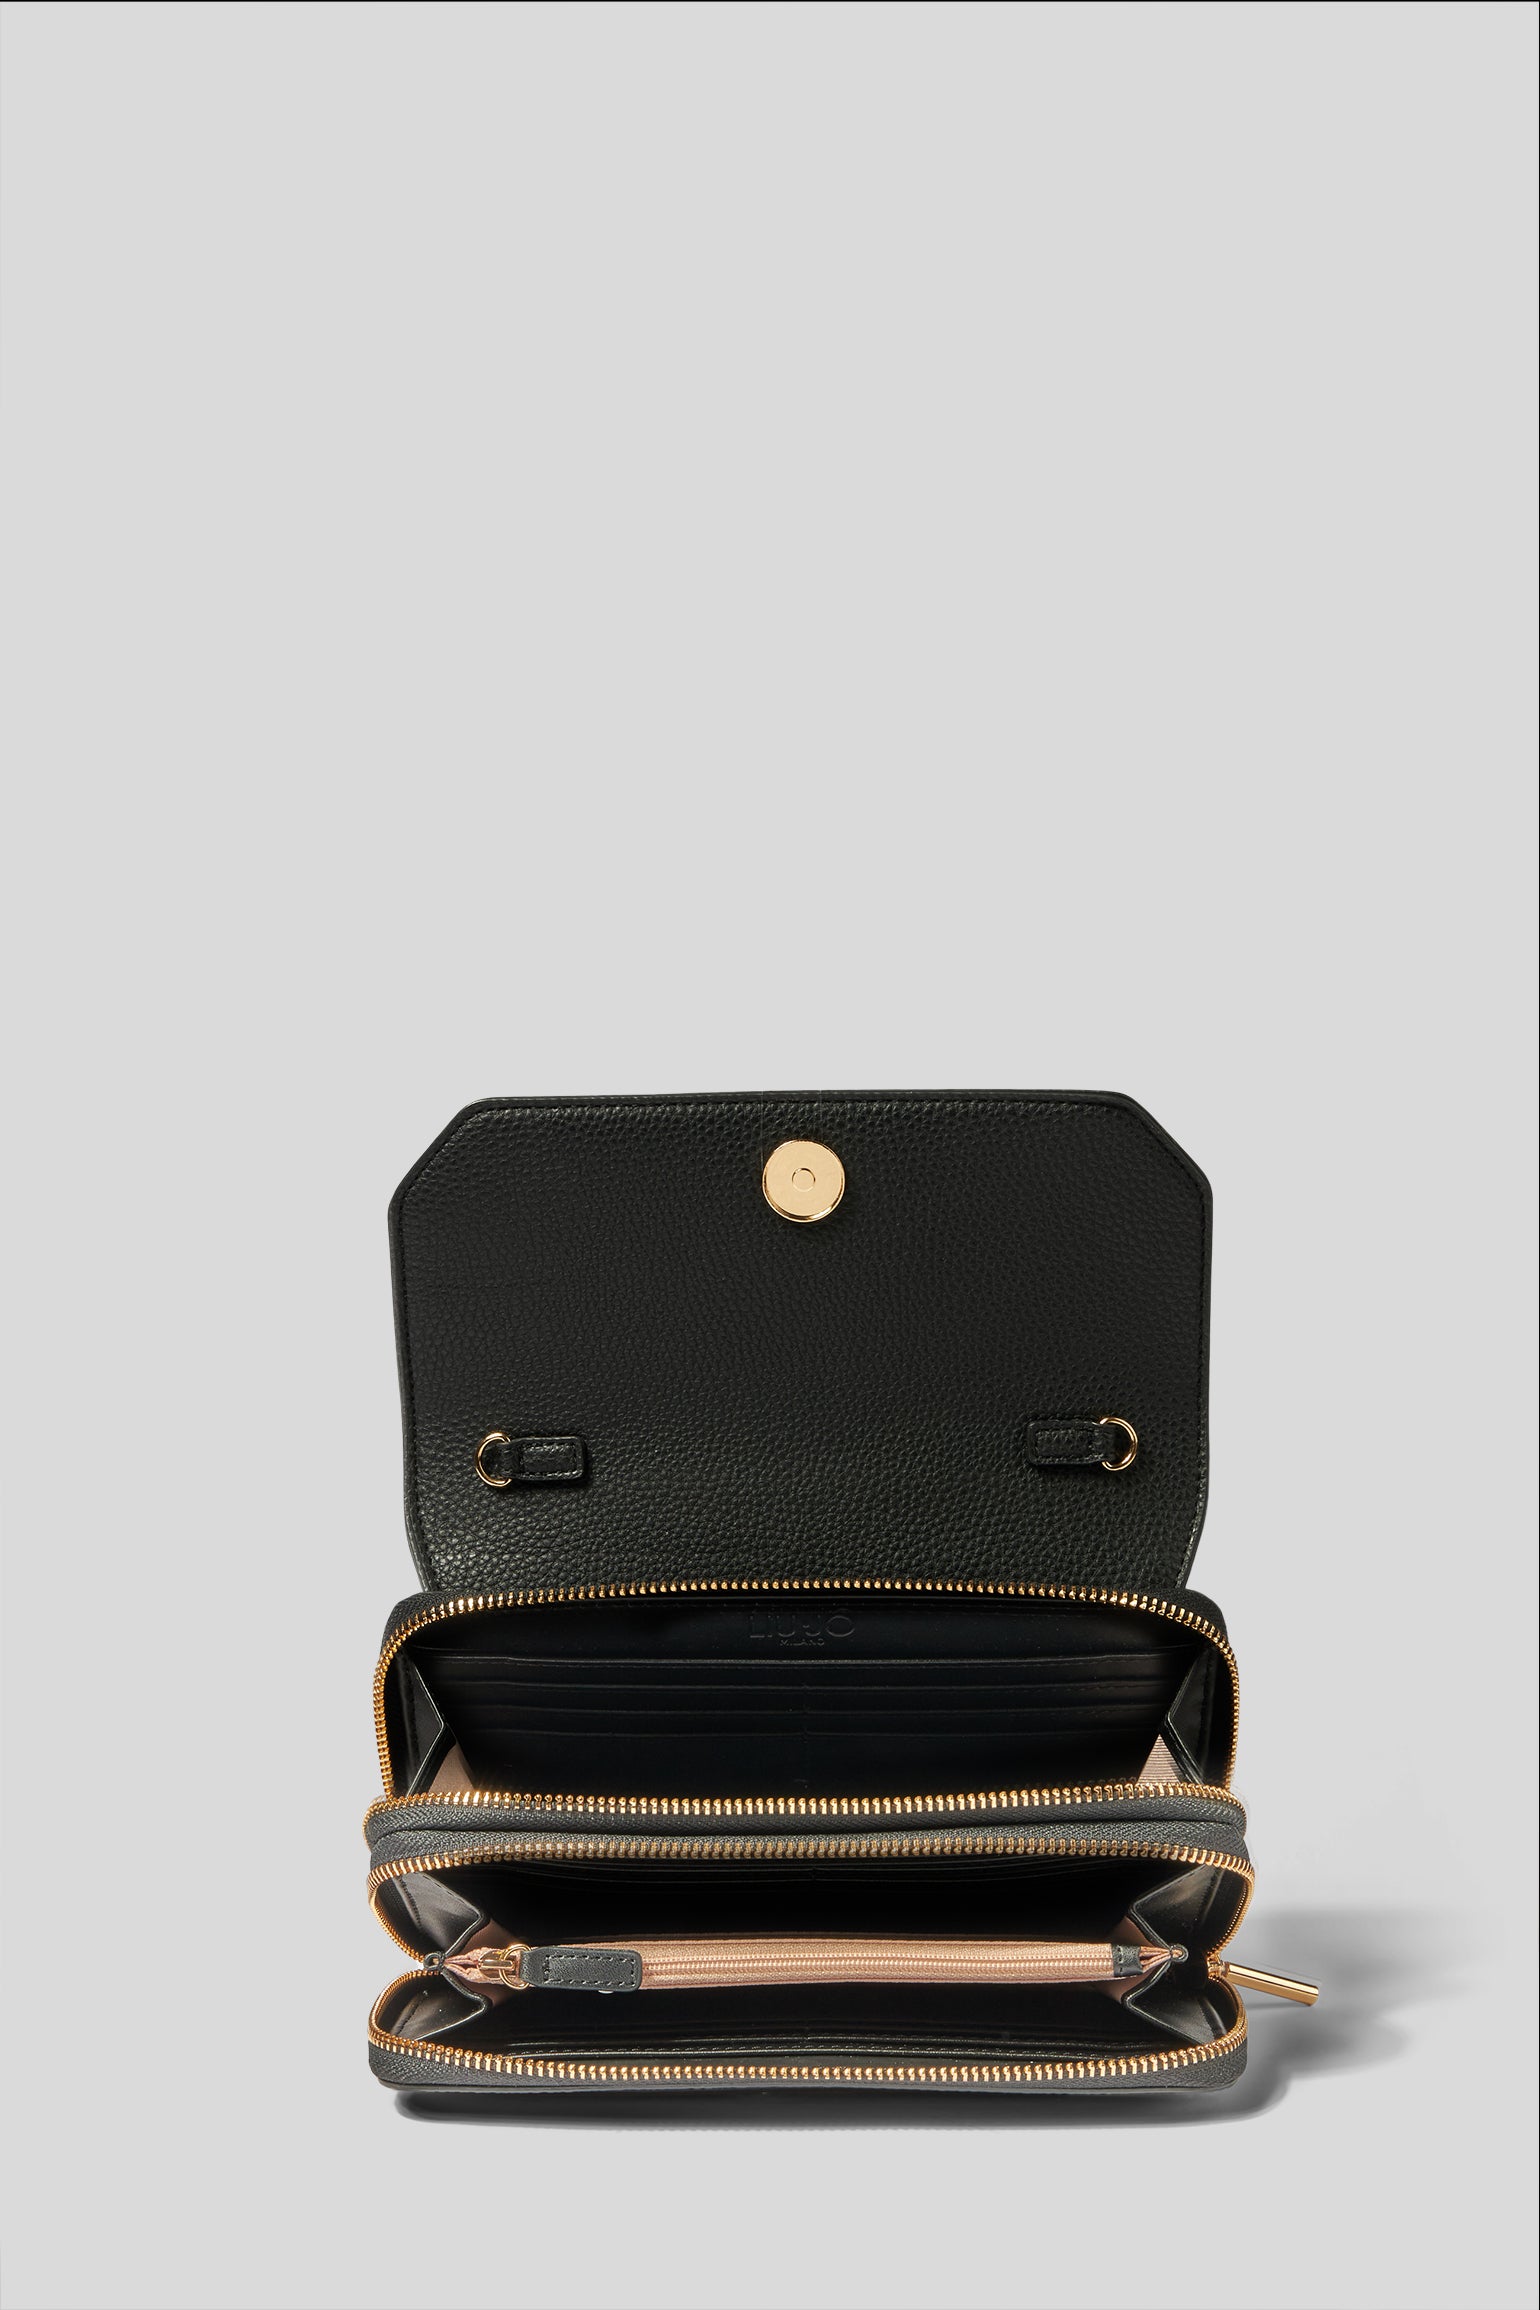 LIU JO Handtasche mit doppeltem Reißverschluss Aro